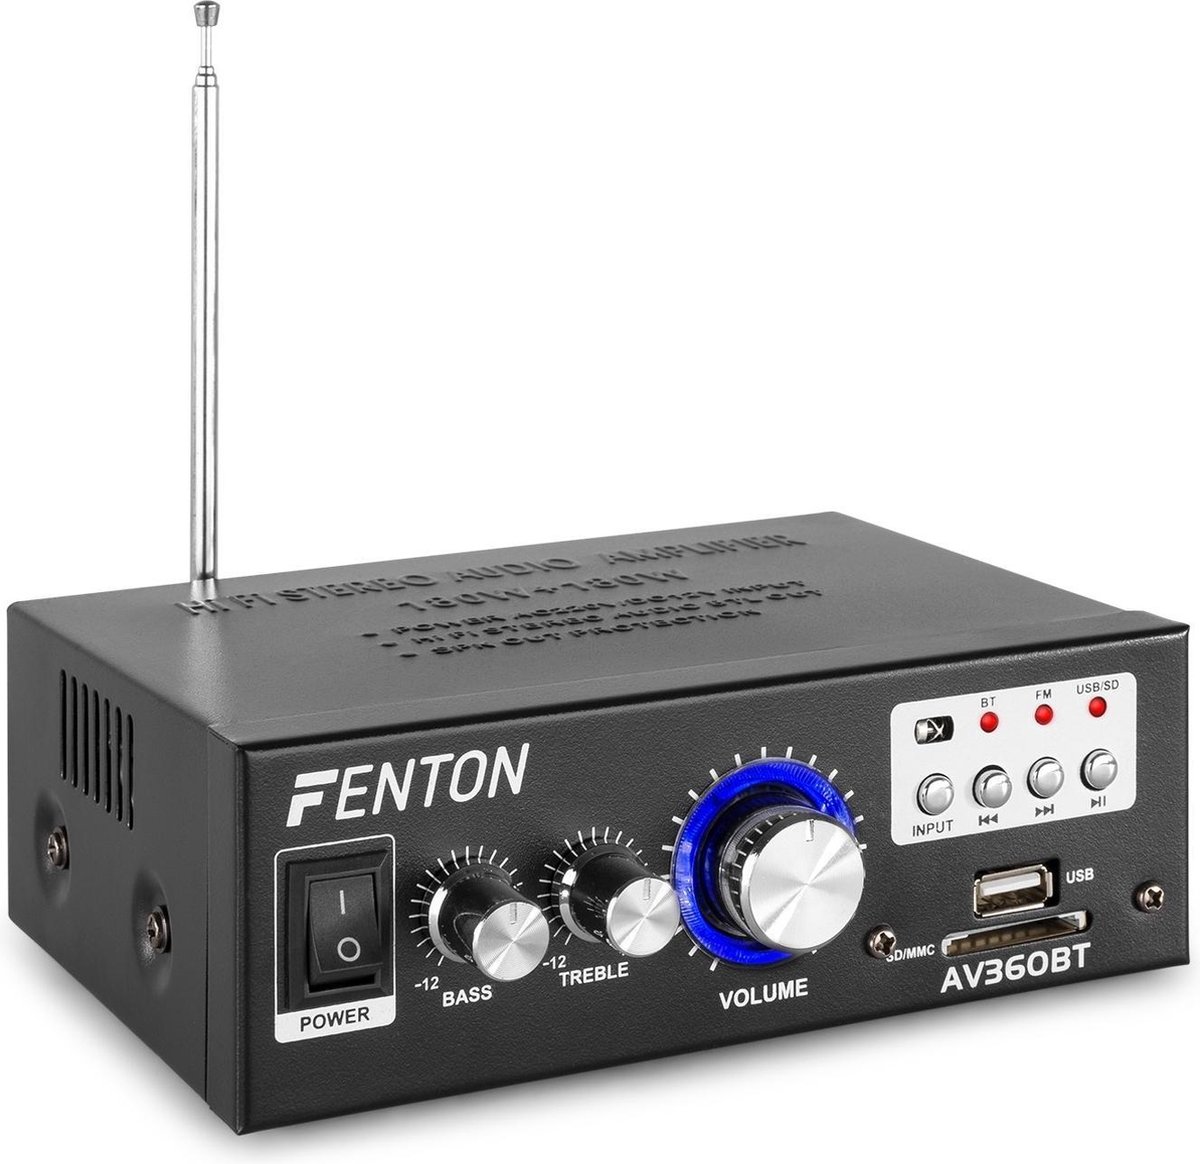 Fenton AV360BT mini versterker met Bluetooth, MP3-speler, USB en SD